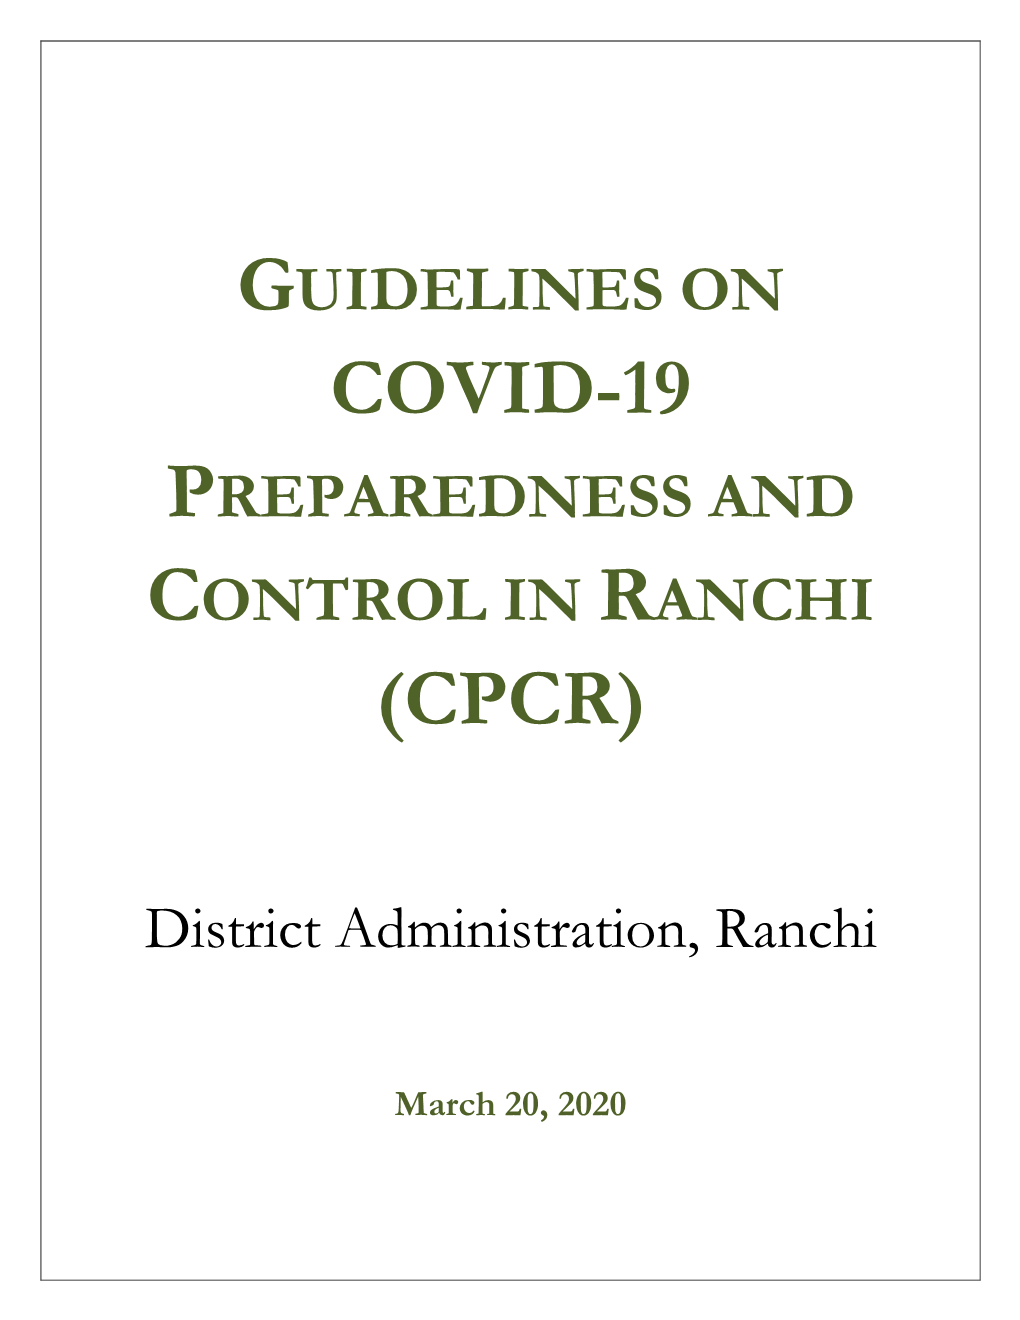 Guidelines on Covid-19 Preparedness and Control in Ranchi (Cpcr)